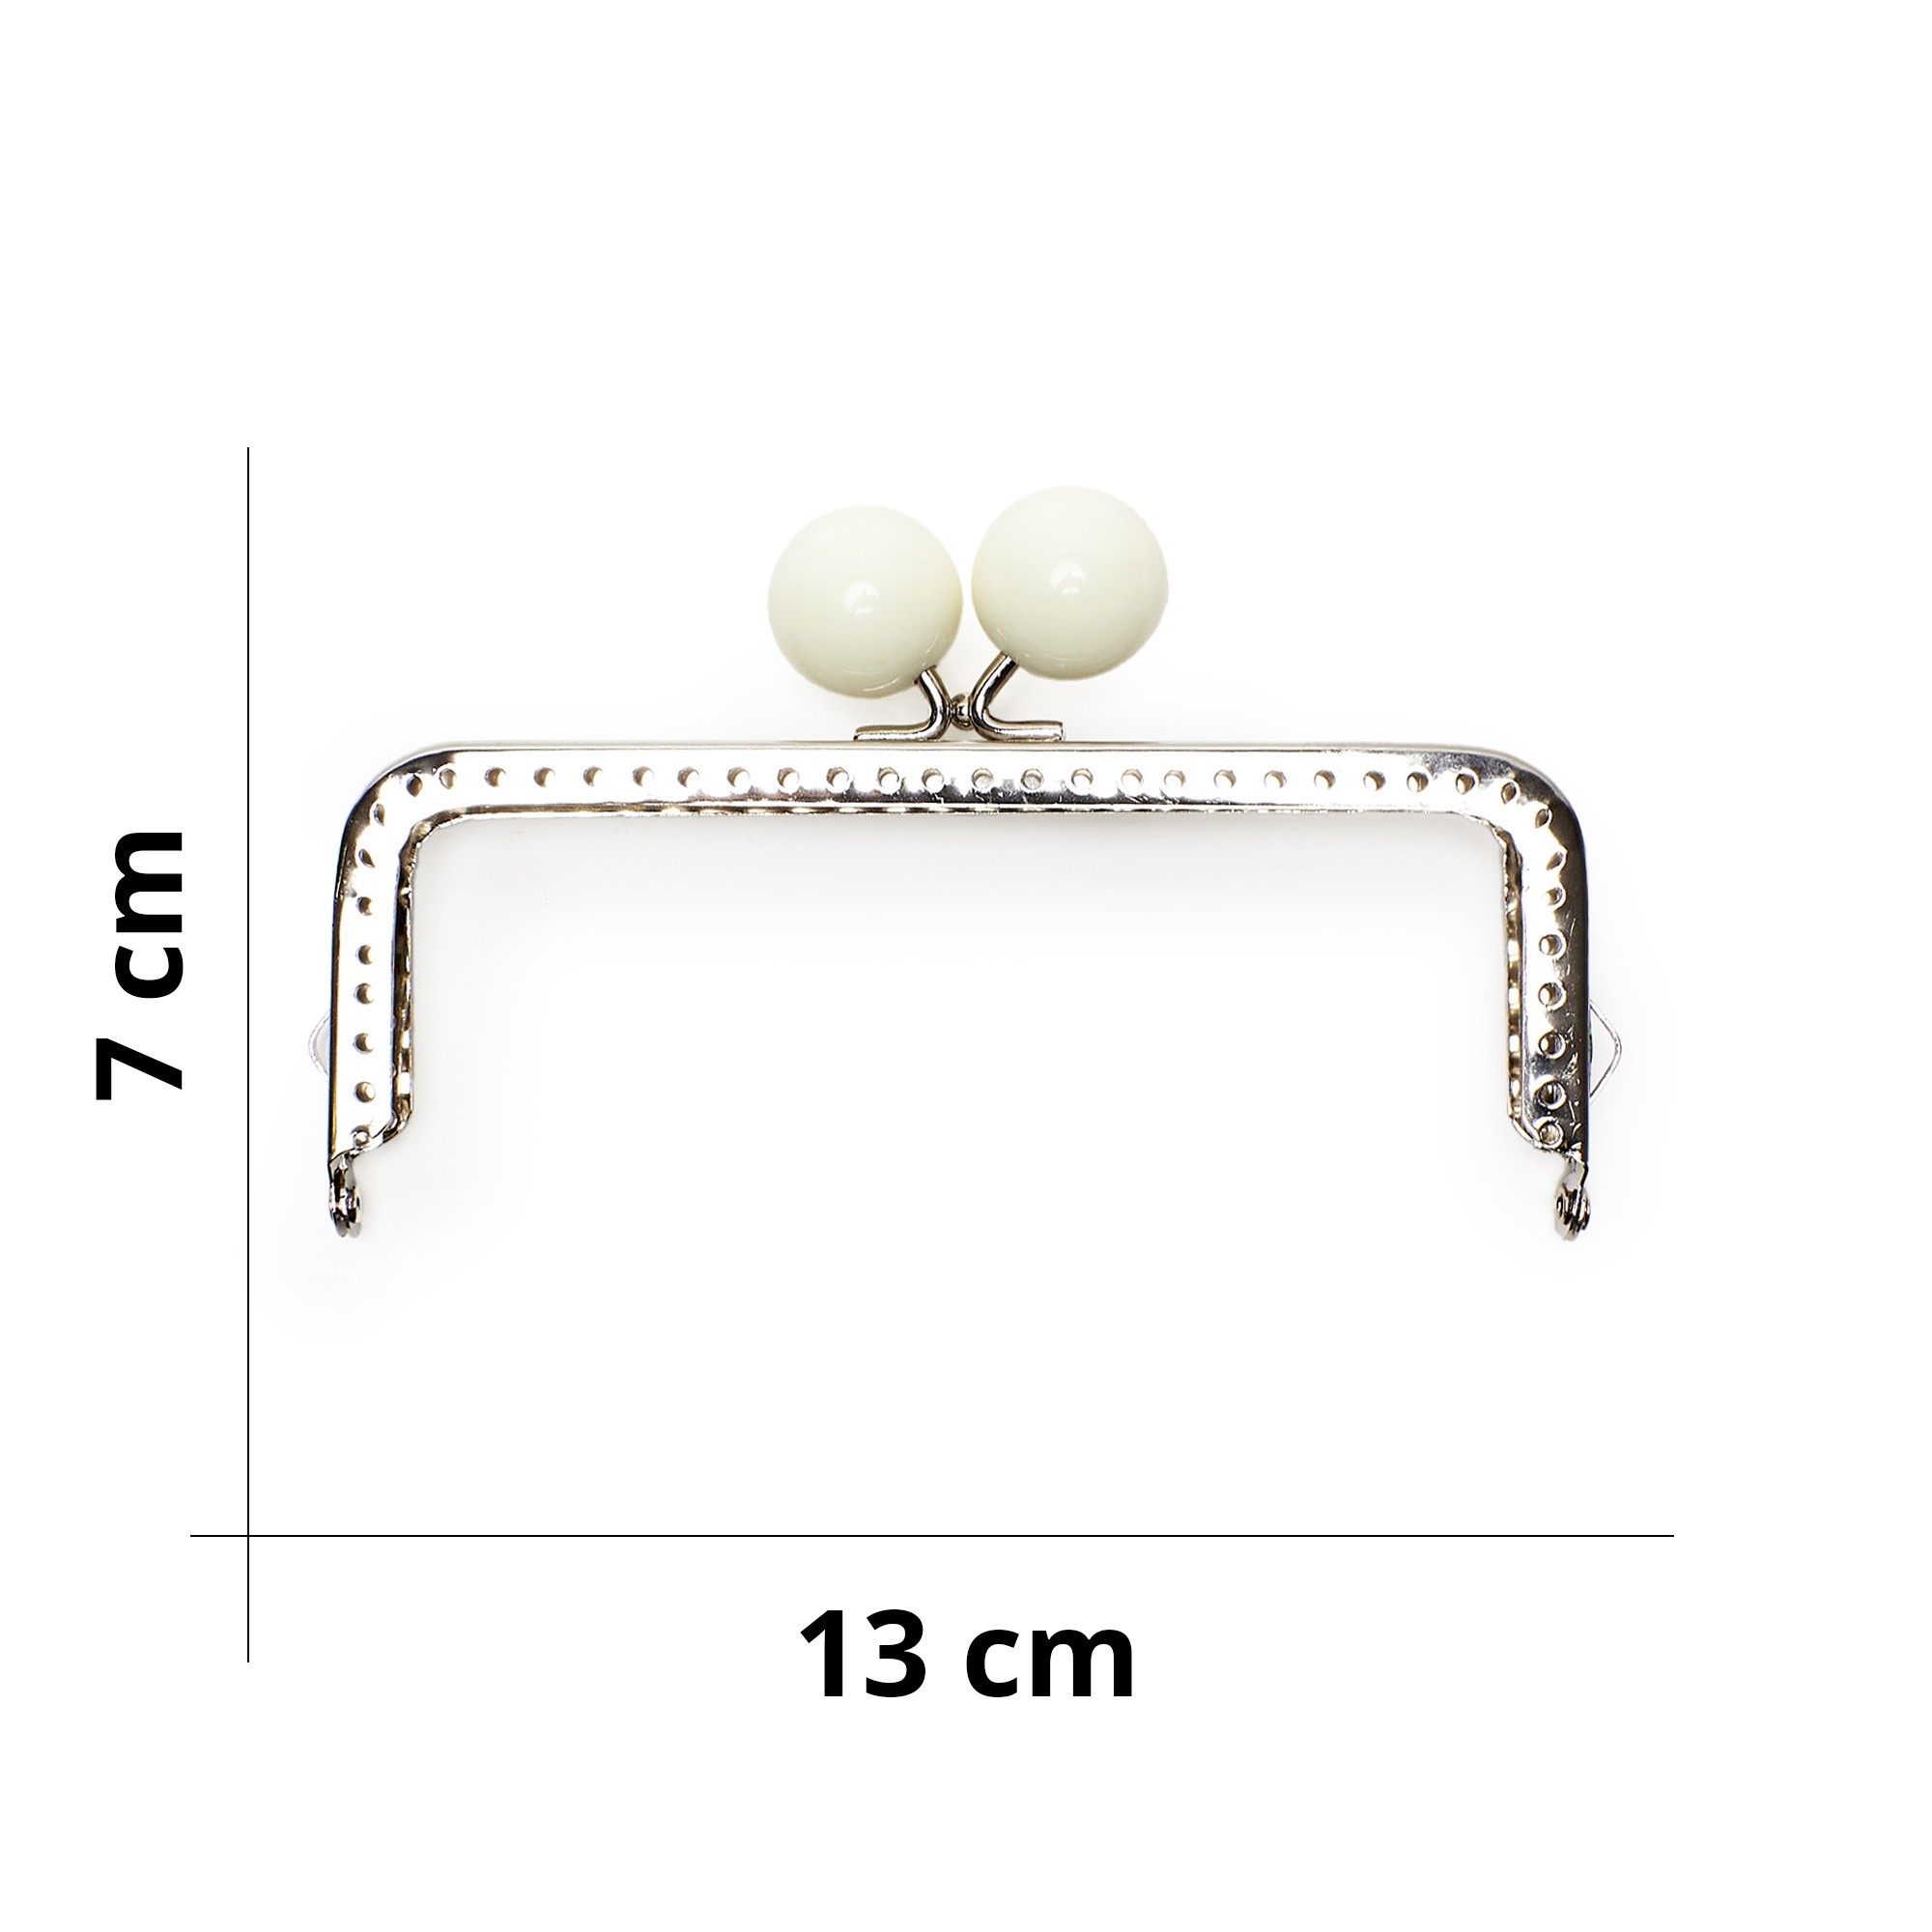 Chiusura borsa clic clac in metallo con perle - 13x7 cm - Tricot Cafè